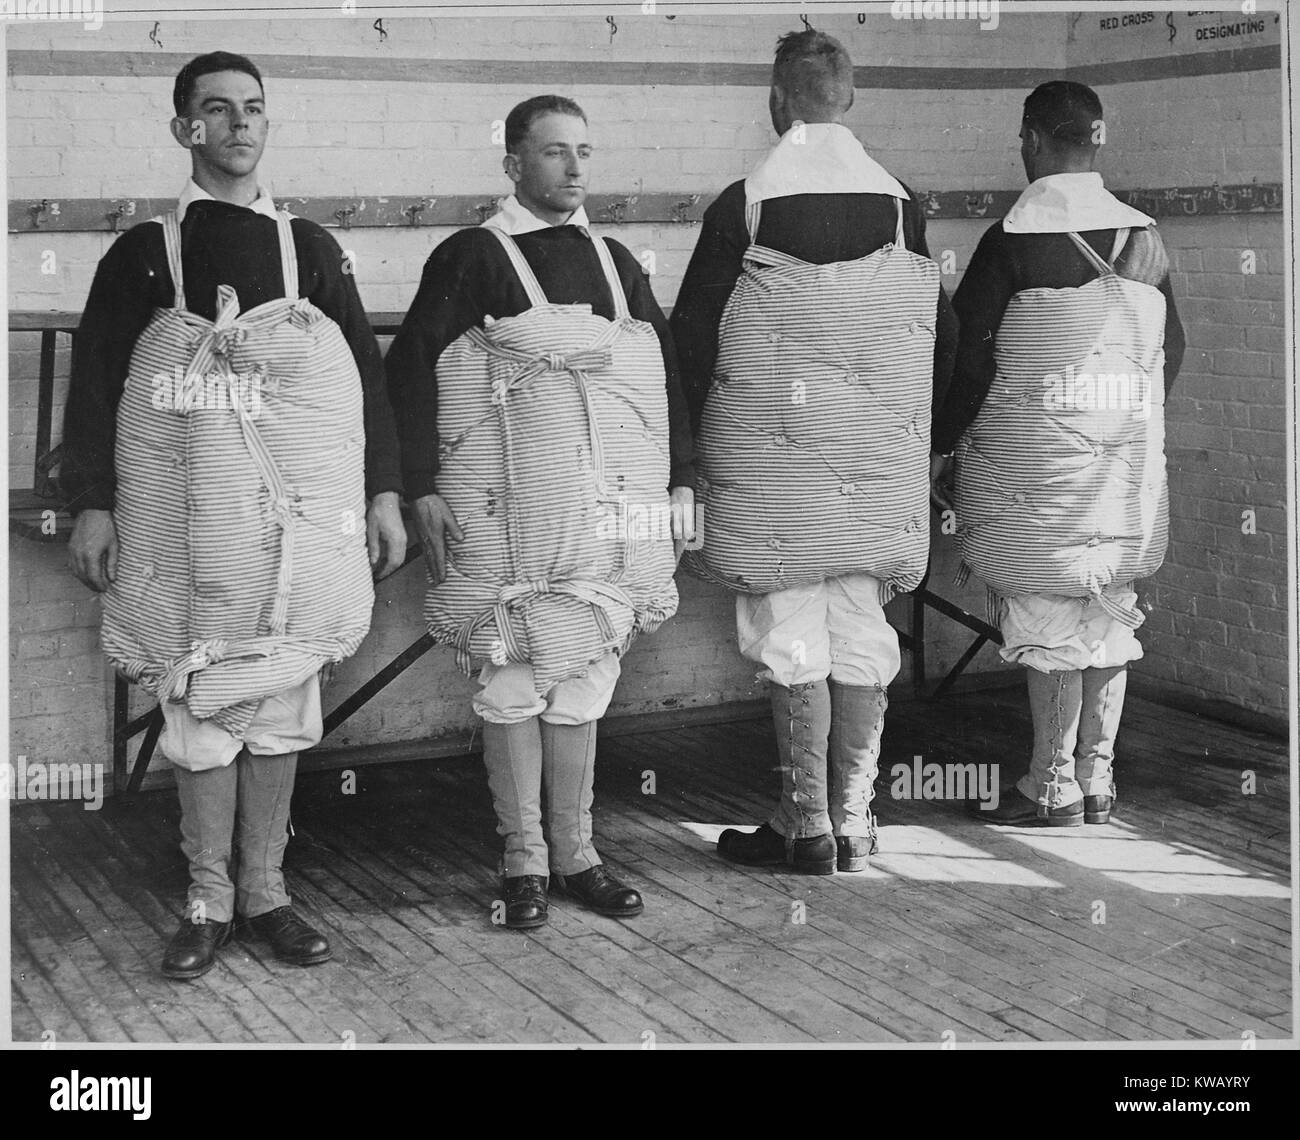 US Naval reclute in piedi con materassi legata a loro per servire come ciambelle salvagente, Newport Naval Training Station, Rhode Island, aprile 1917. Immagine cortesia archivi nazionali. Foto Stock